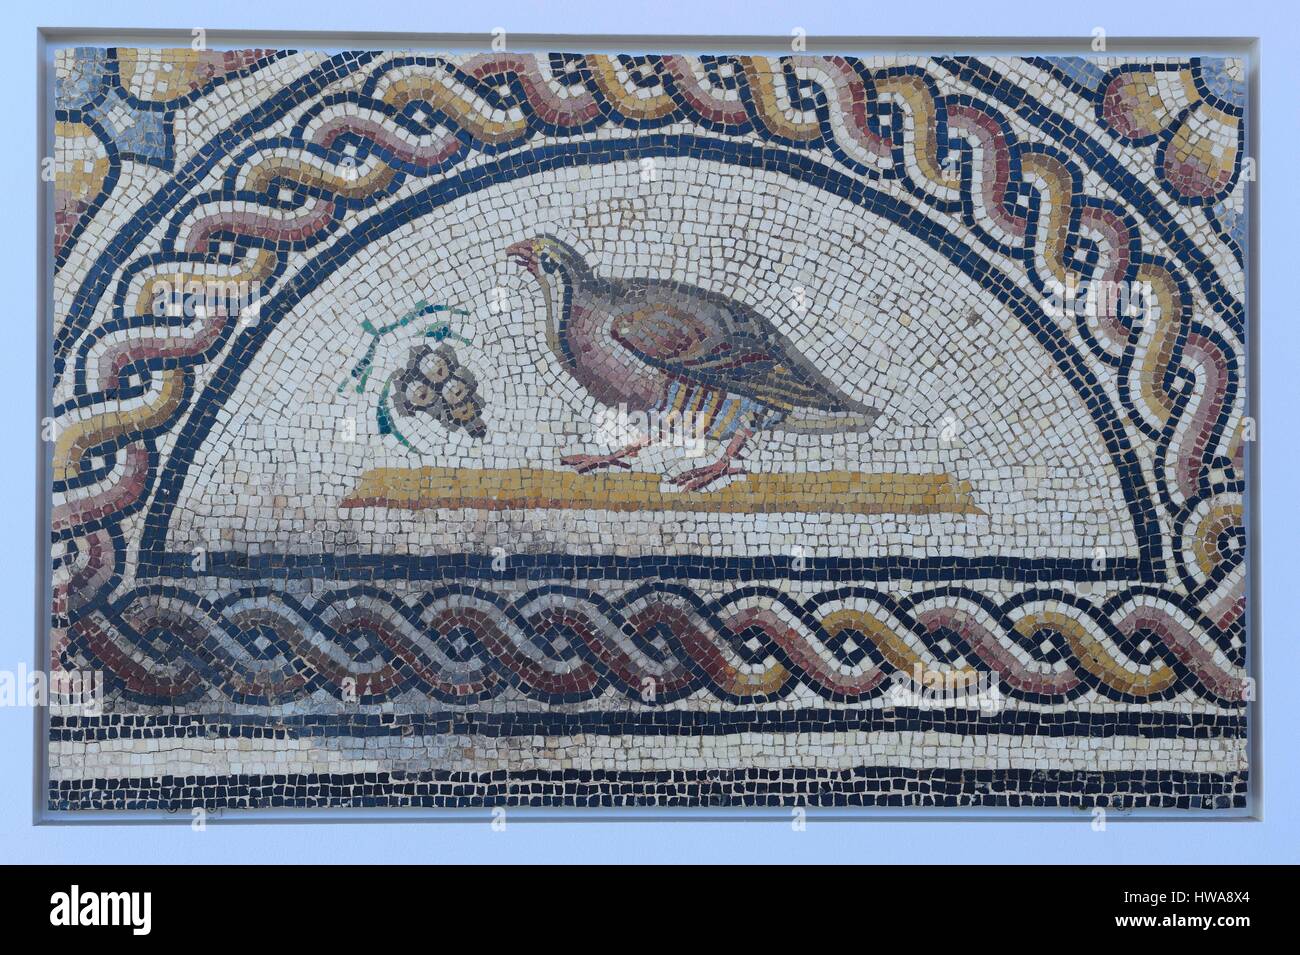 Francia, Rhone, Saint Romain en Gal, il Museo Gallo-Romano di Saint-Romain-en-Gal sito archeologico, mosaico romano risalente al secondo secolo D.C. Foto Stock